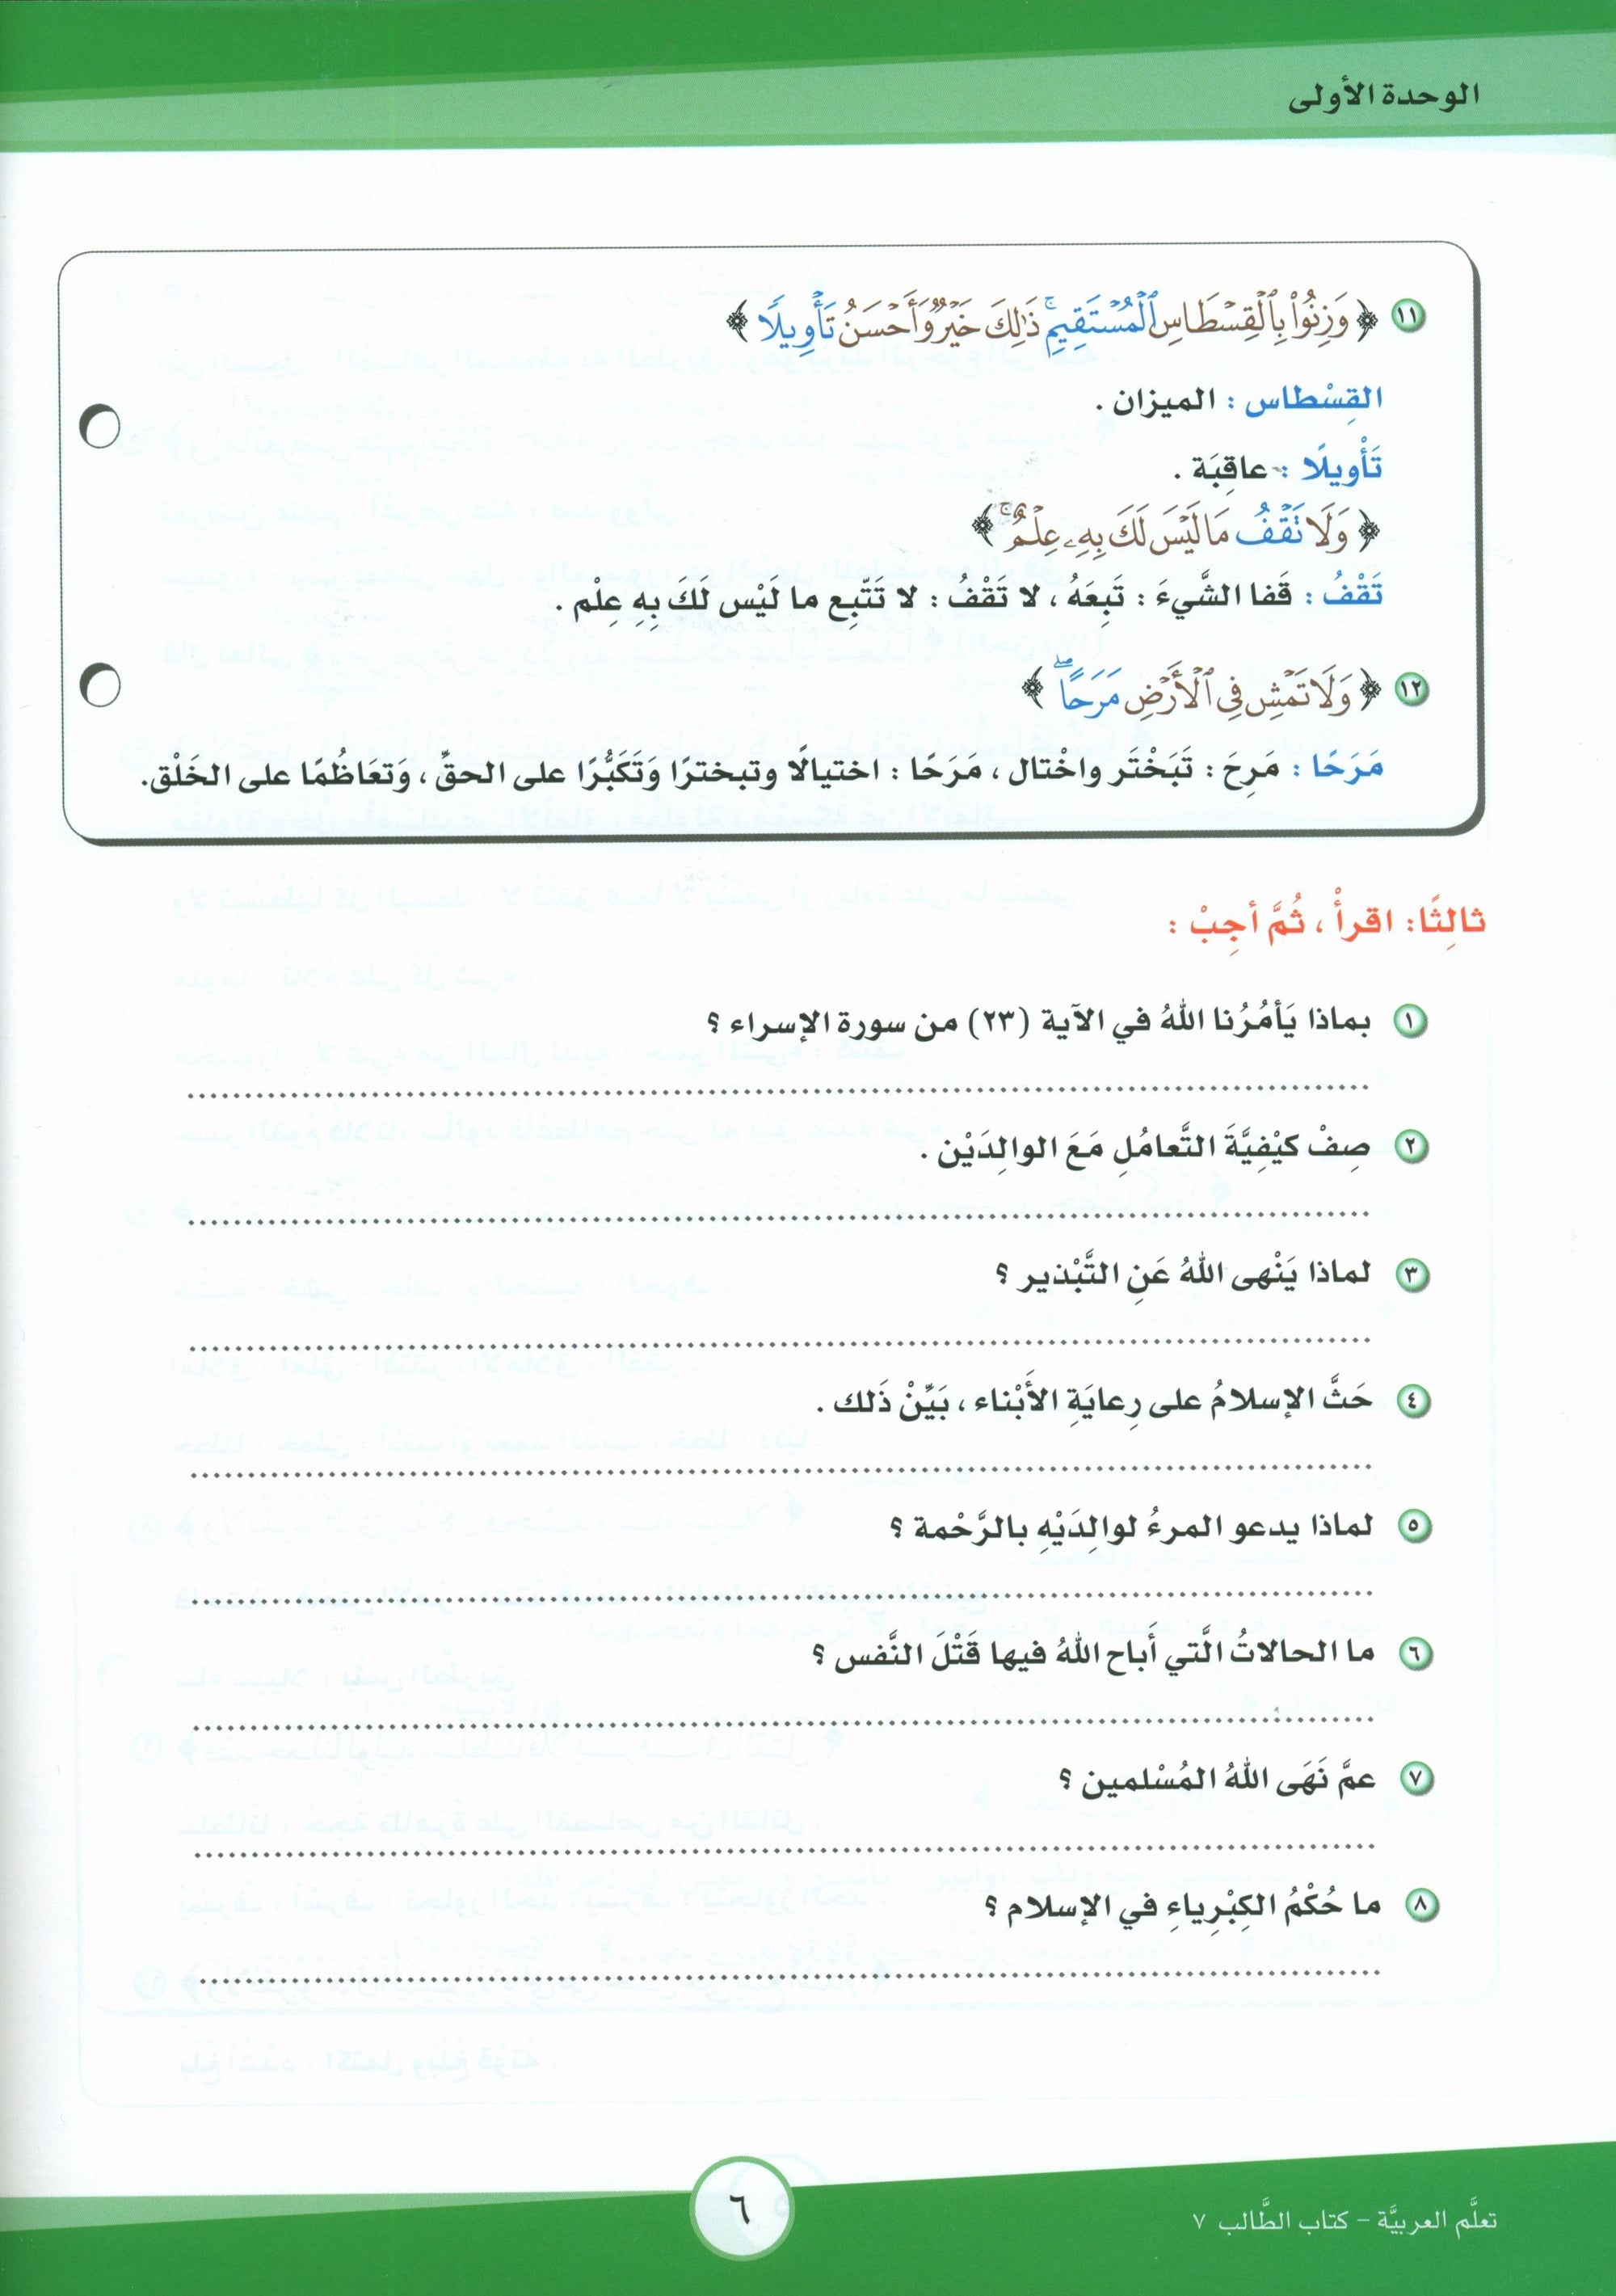 ICO Learn Arabic Textbook Level 7 (Combined Edition) تعلم العربية كتاب التلميذ